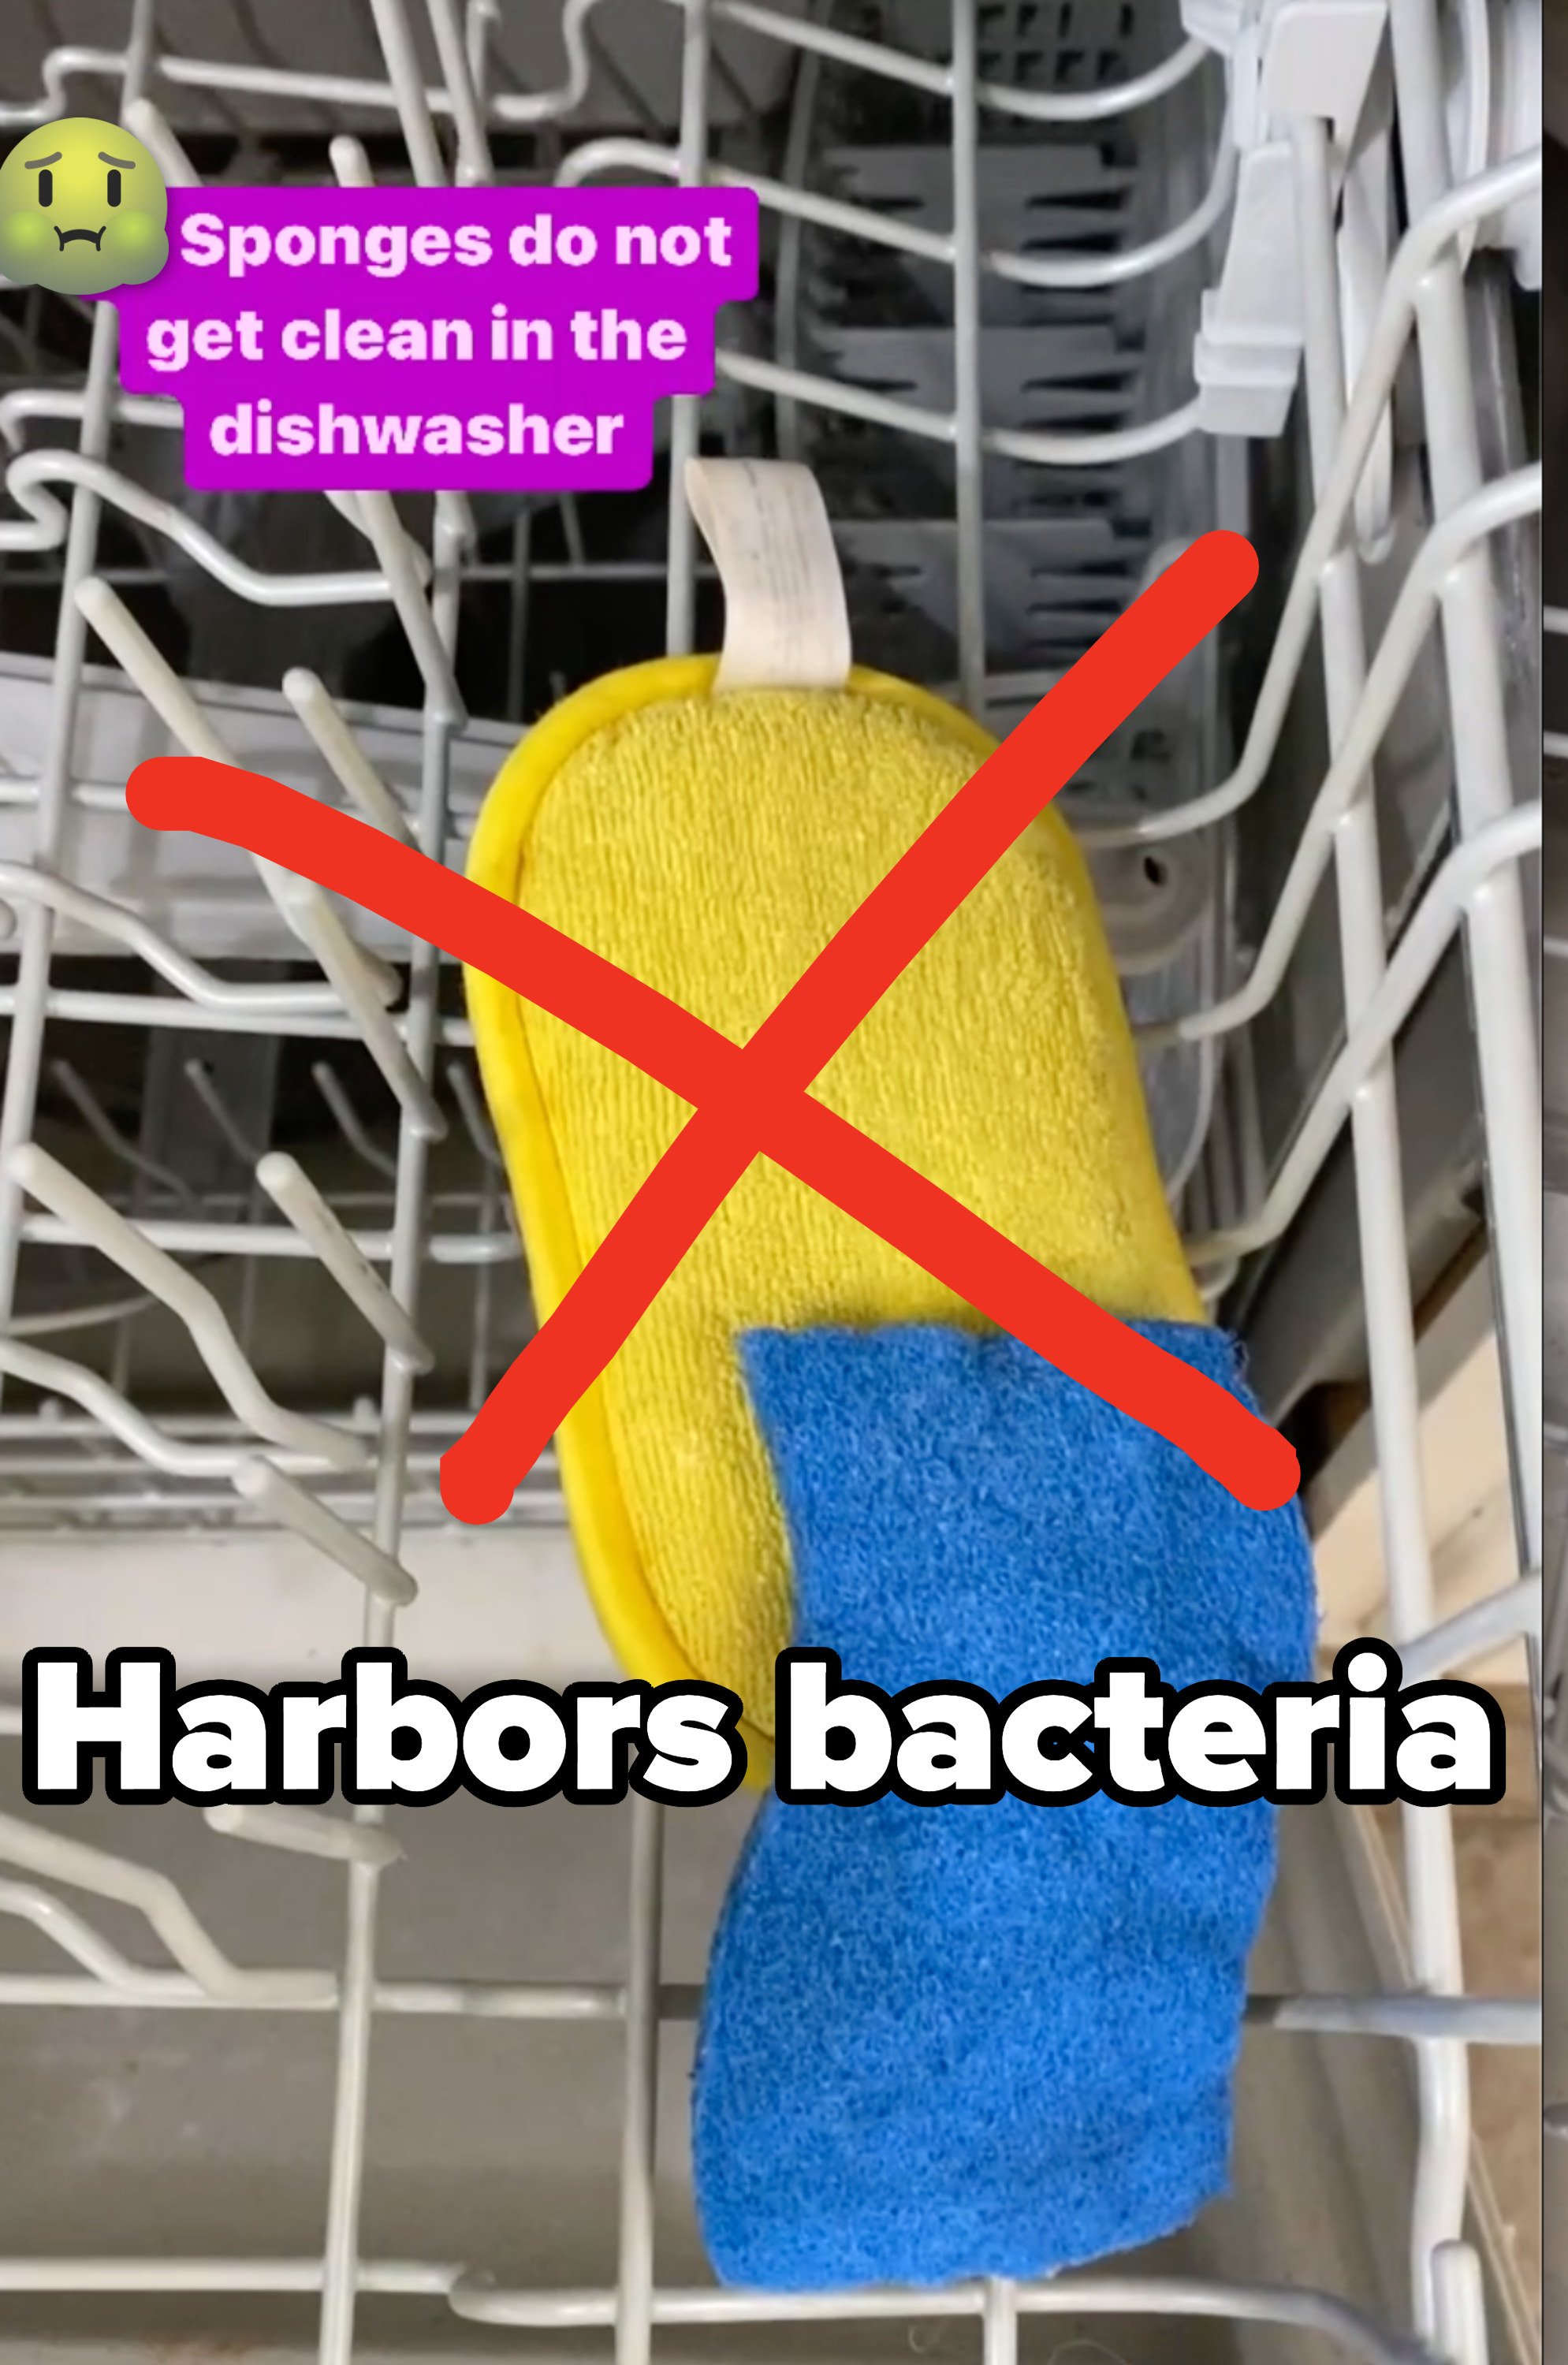 文本:海绵得不到清洁洗碗机,X /海绵和更多的文字说,“港口bacteria"